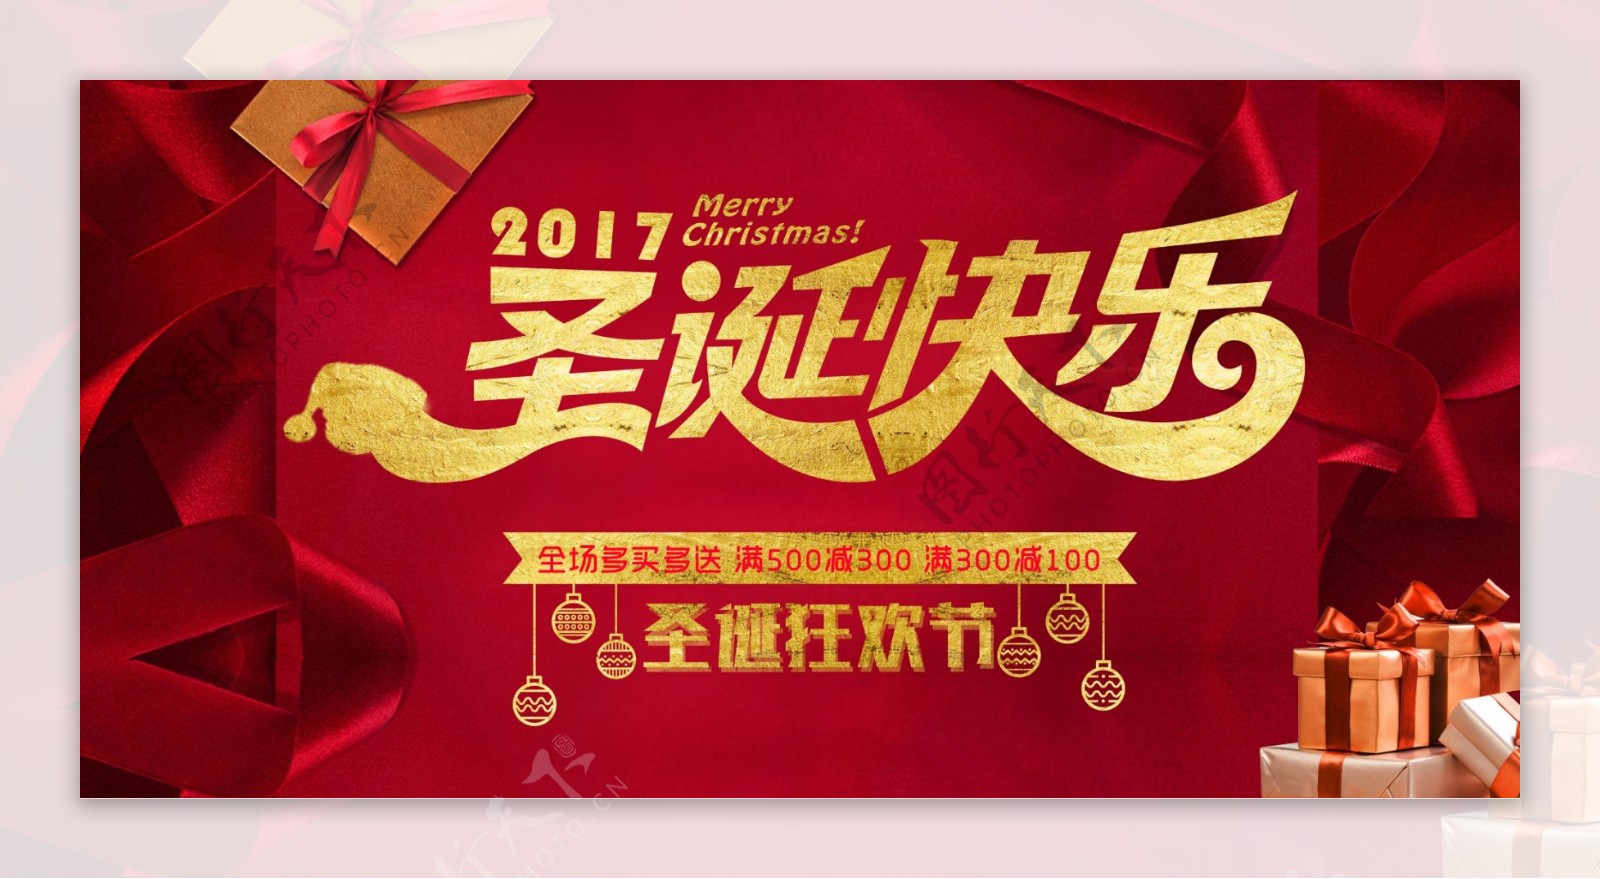 红色背景圣诞节快乐促销宣传展板